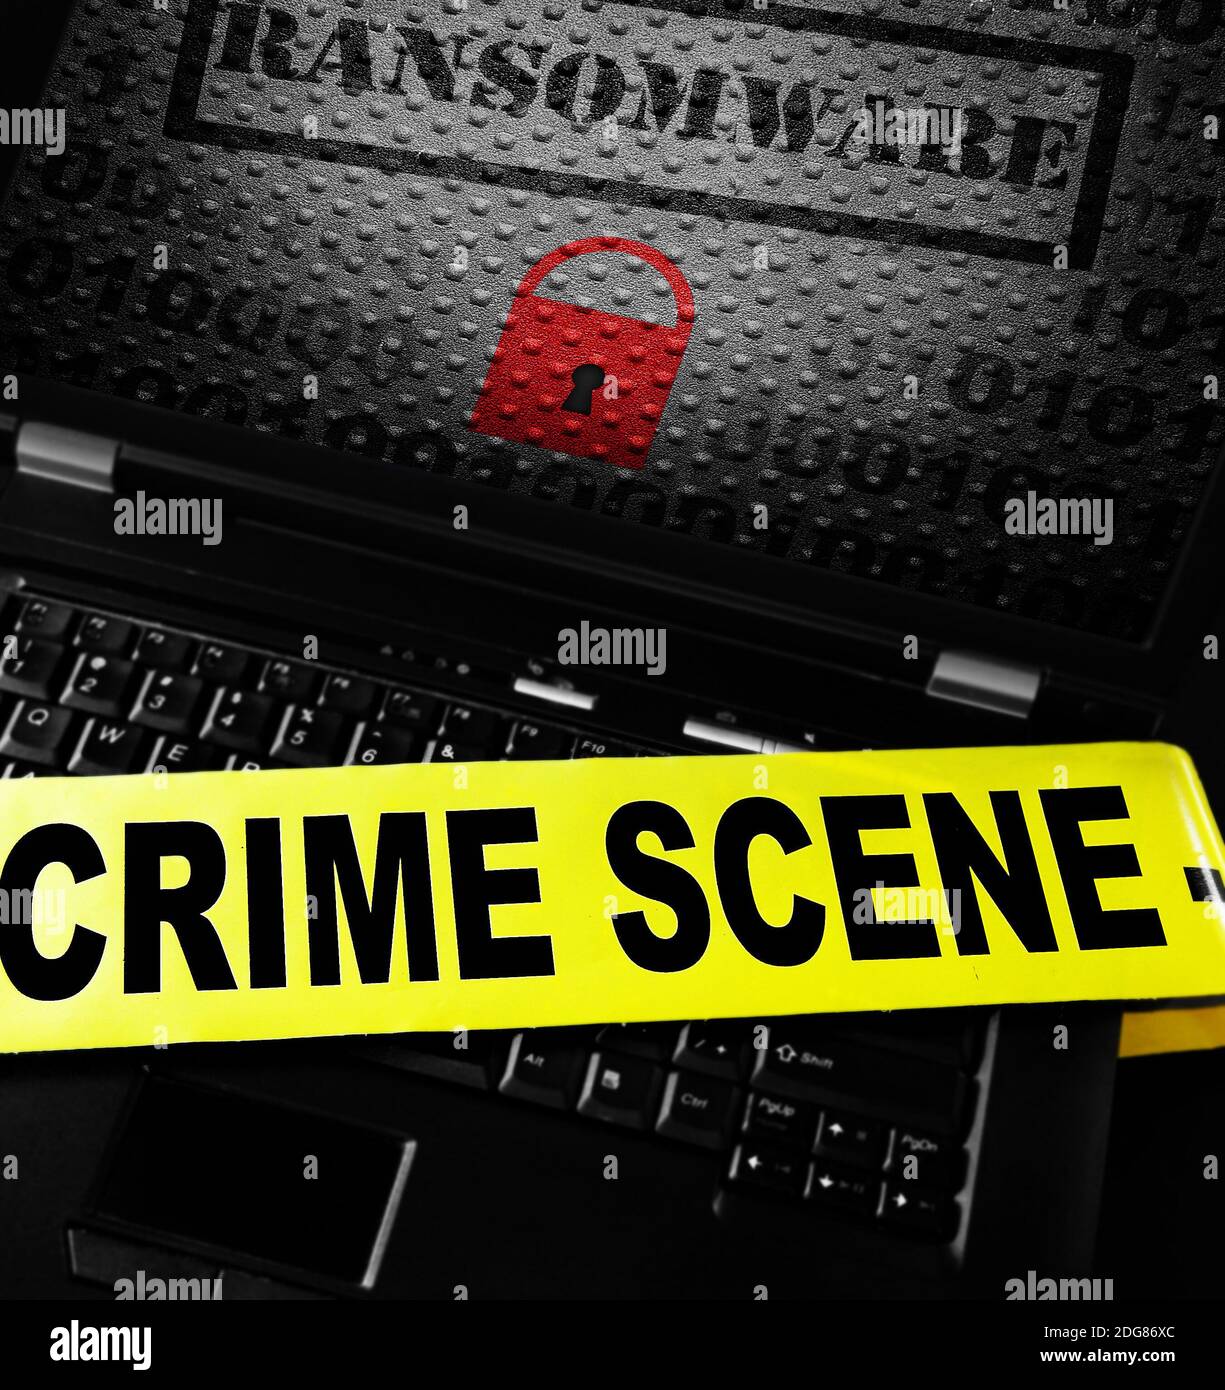 Computer ransomware crime scene Stock Photo